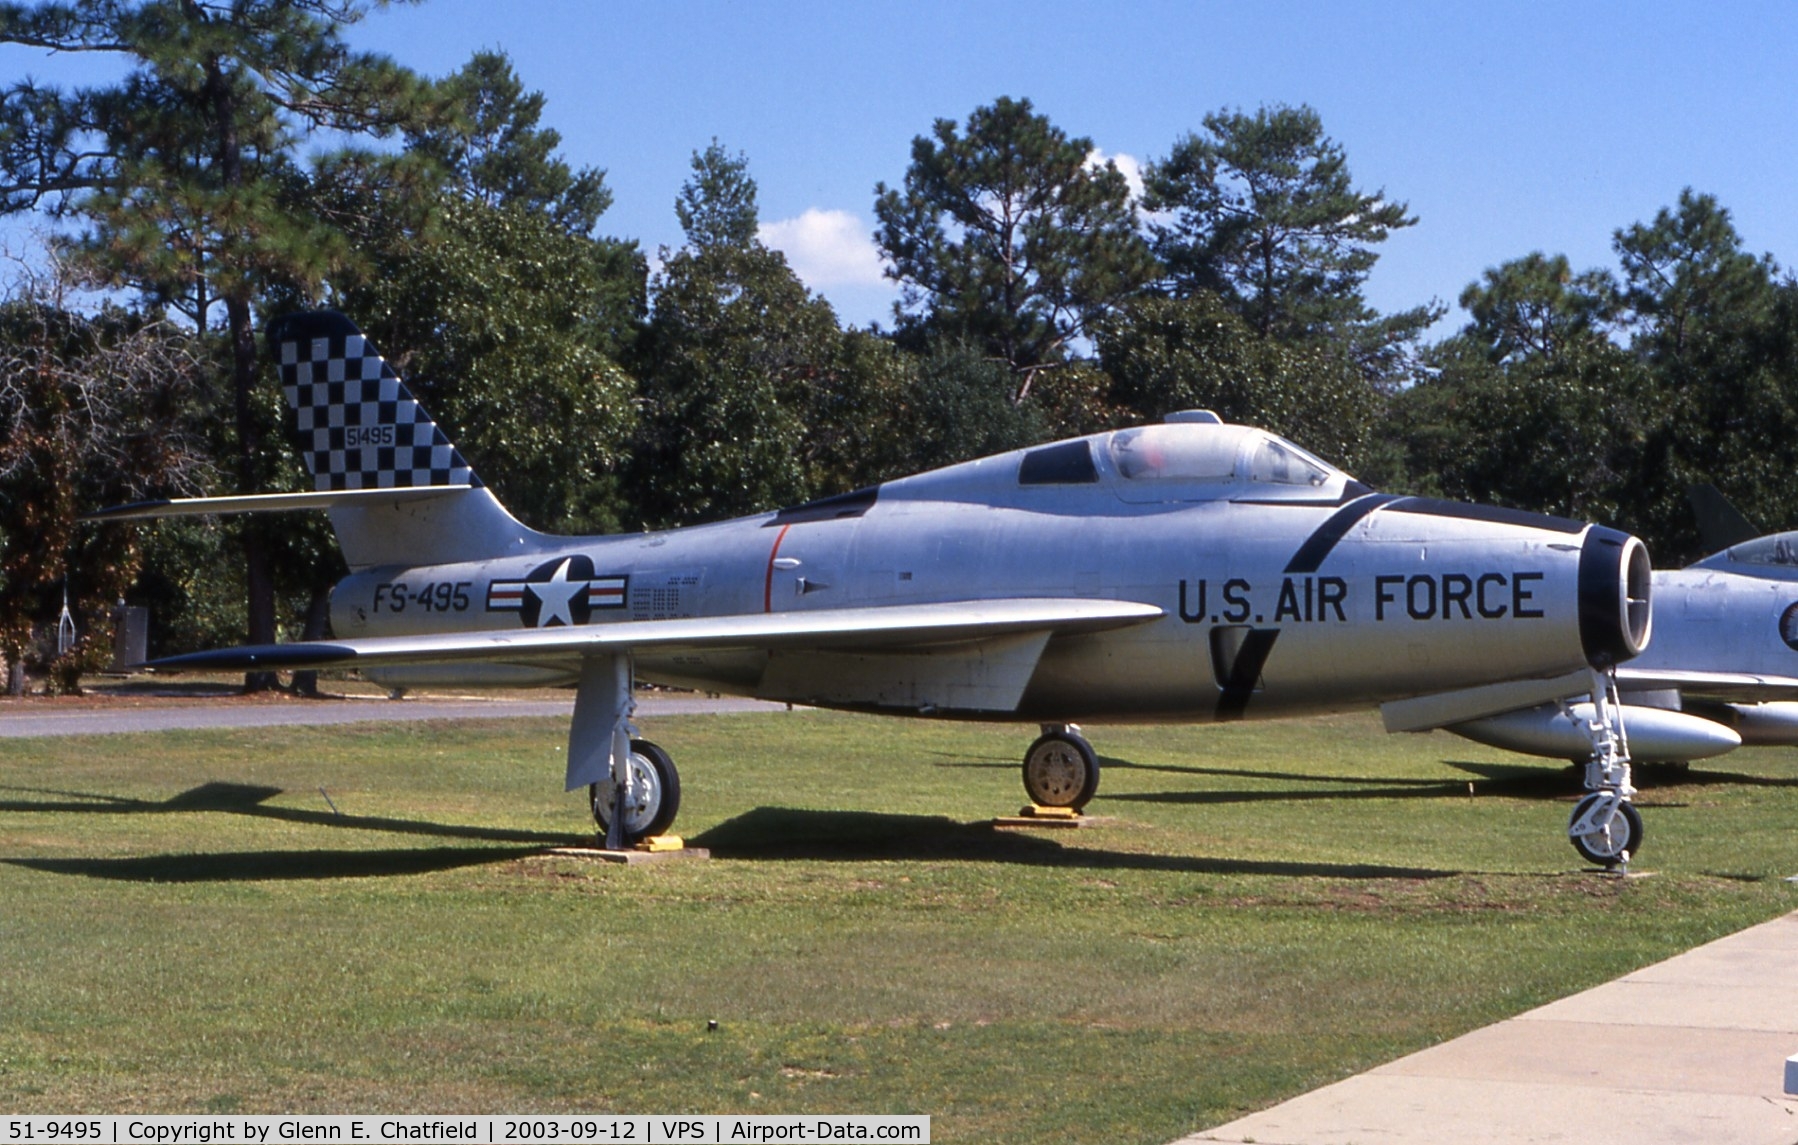 51-9495, 1951 General Motors F-84F-35-GK Thunderstreak C/N Not found 51-9495, F-84F at the U.S.A.F. Armament Museum